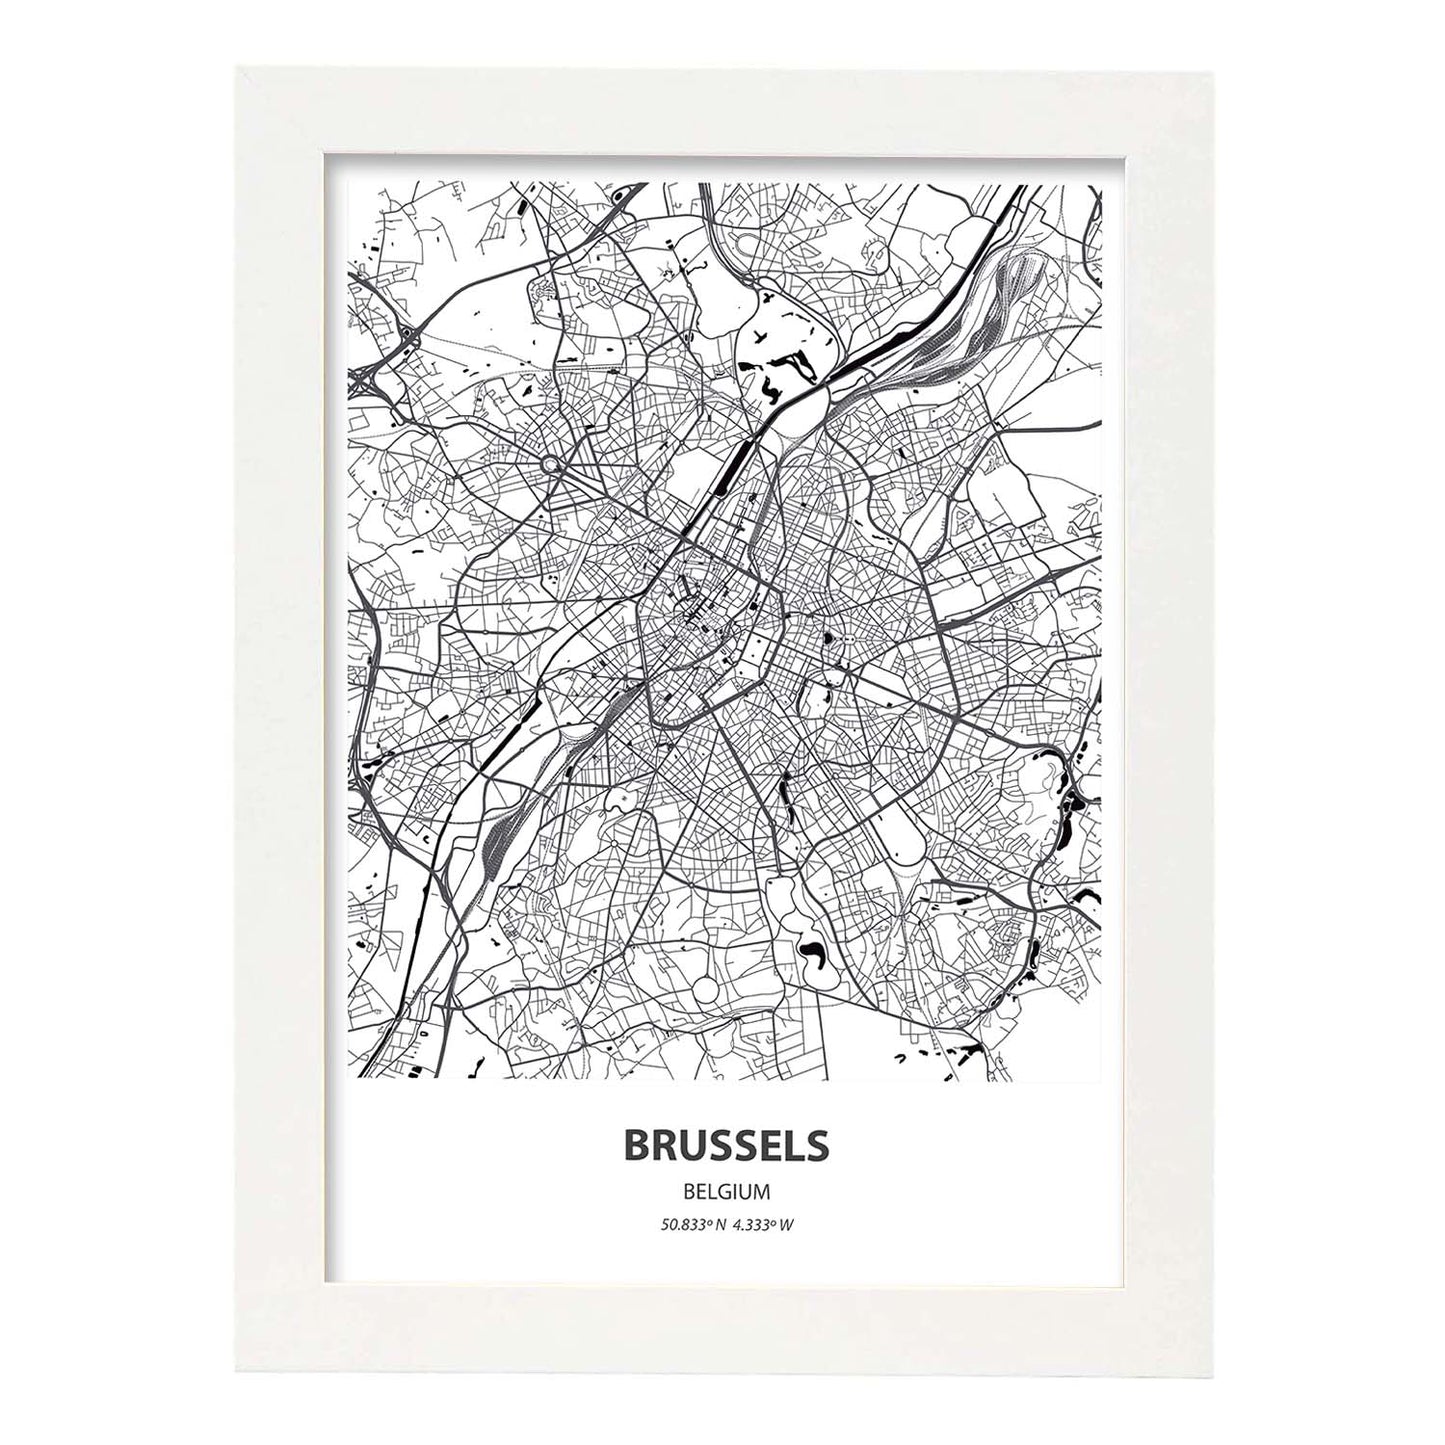 Poster con mapa de Brussels - Belgica. Láminas de ciudades de Holanda y Bélgica con mares y ríos en color negro.-Artwork-Nacnic-A4-Marco Blanco-Nacnic Estudio SL